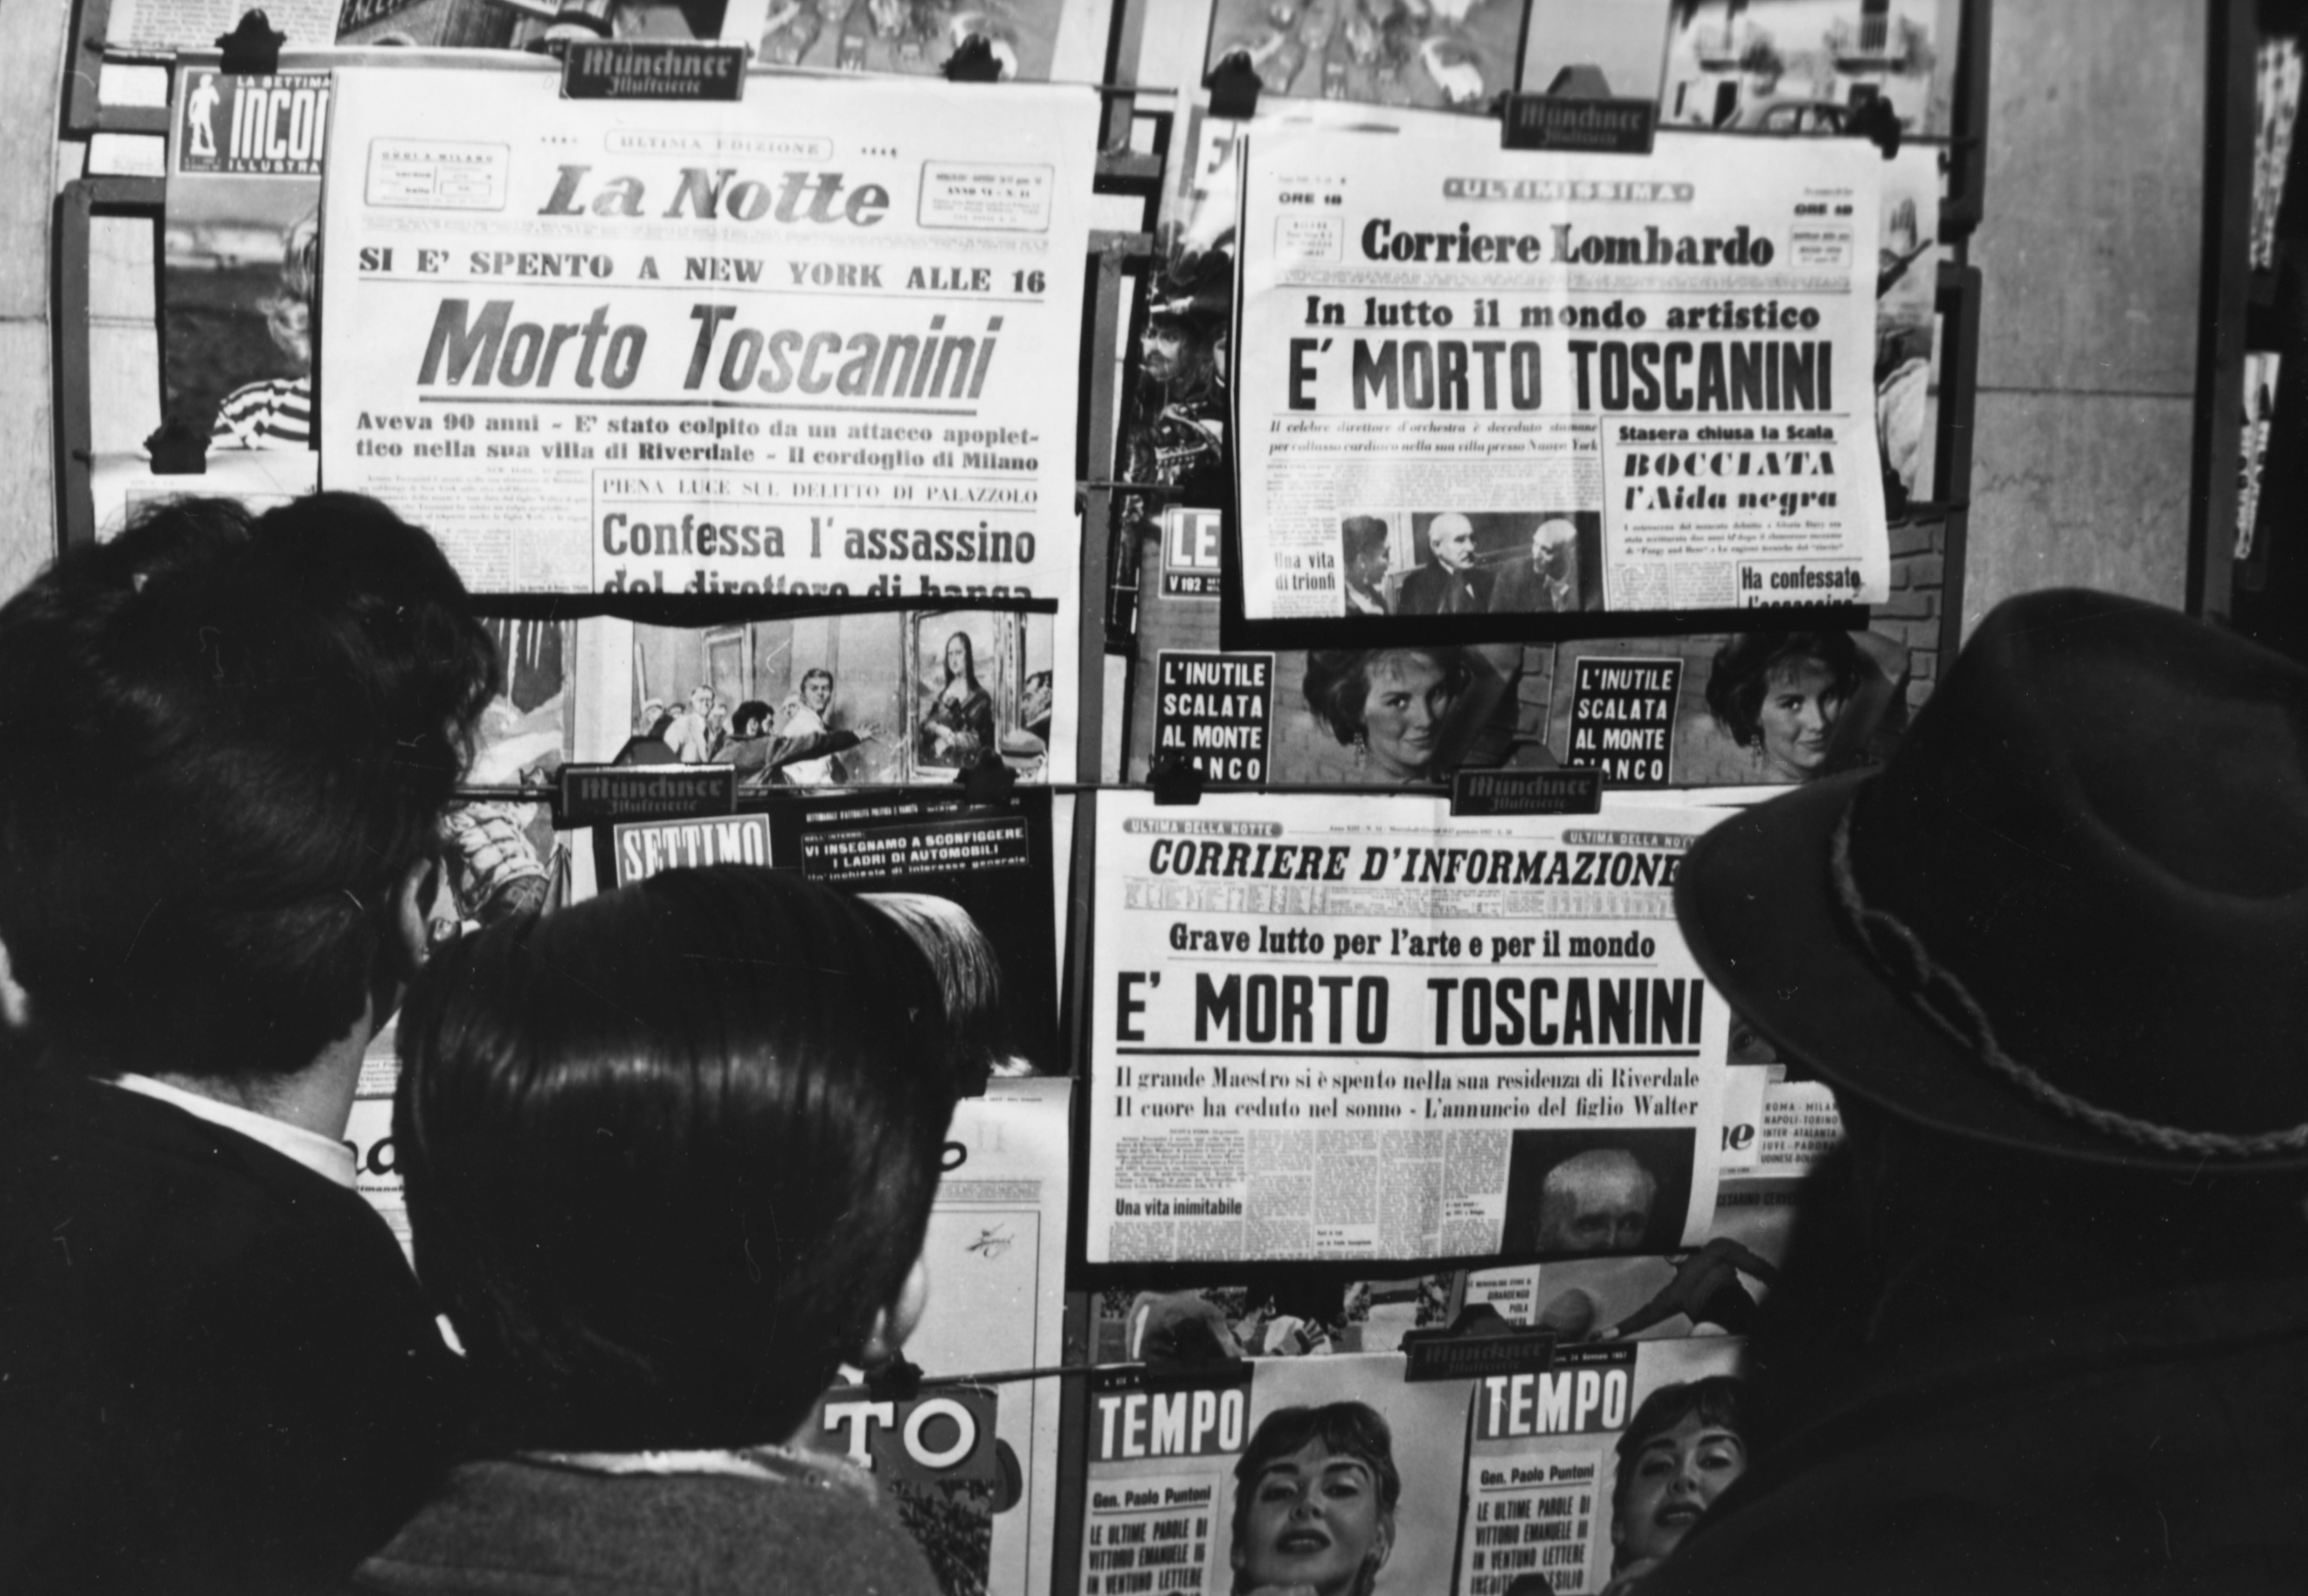 1957. I quotidiani italiani annunciano la morte di Arturo Toscanini, avvenuta a New York.